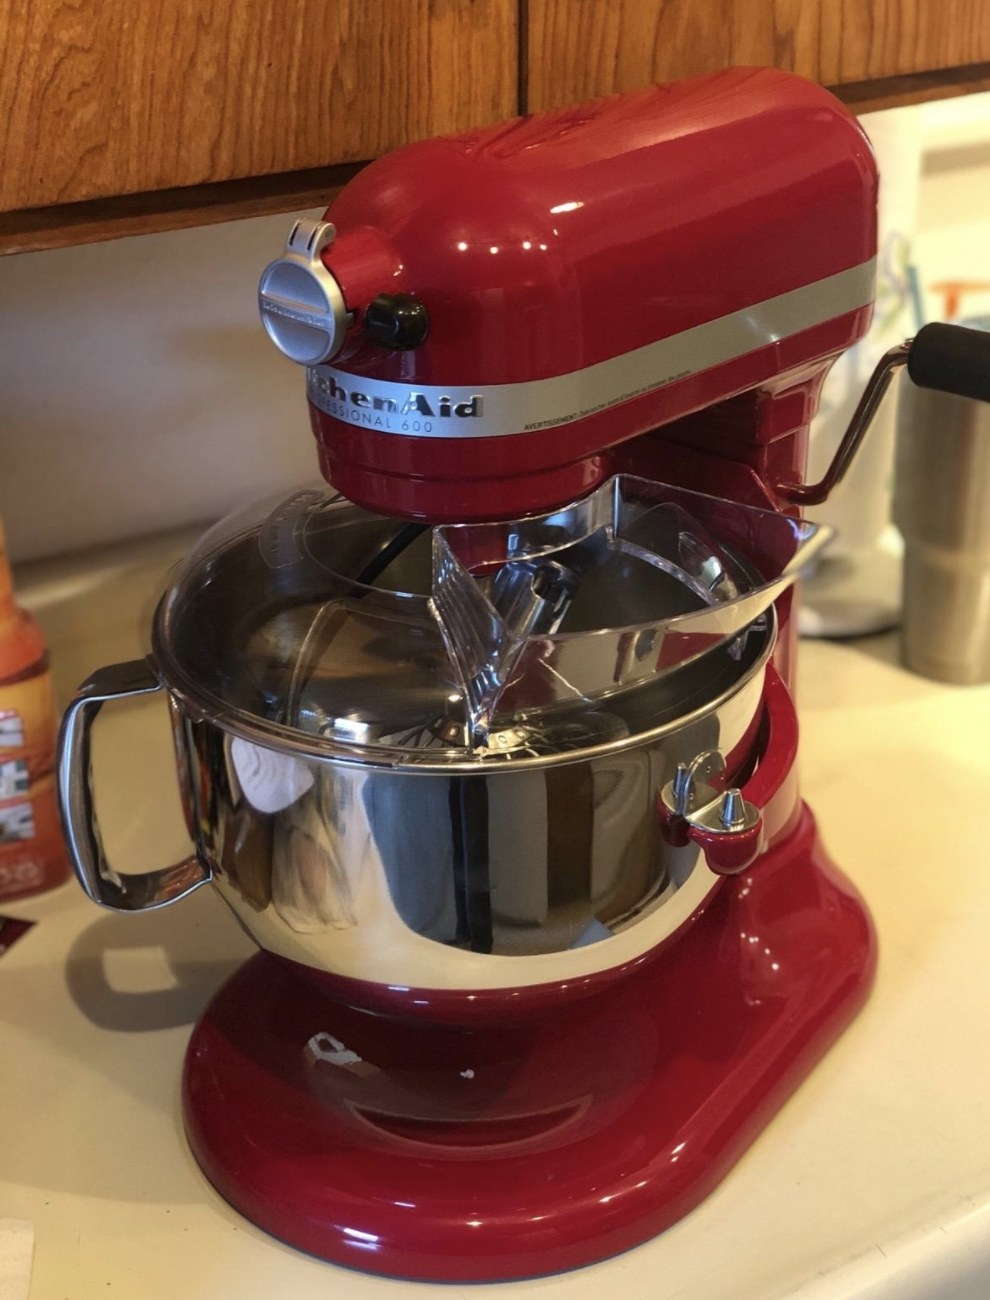 a red kitchenaid mixer